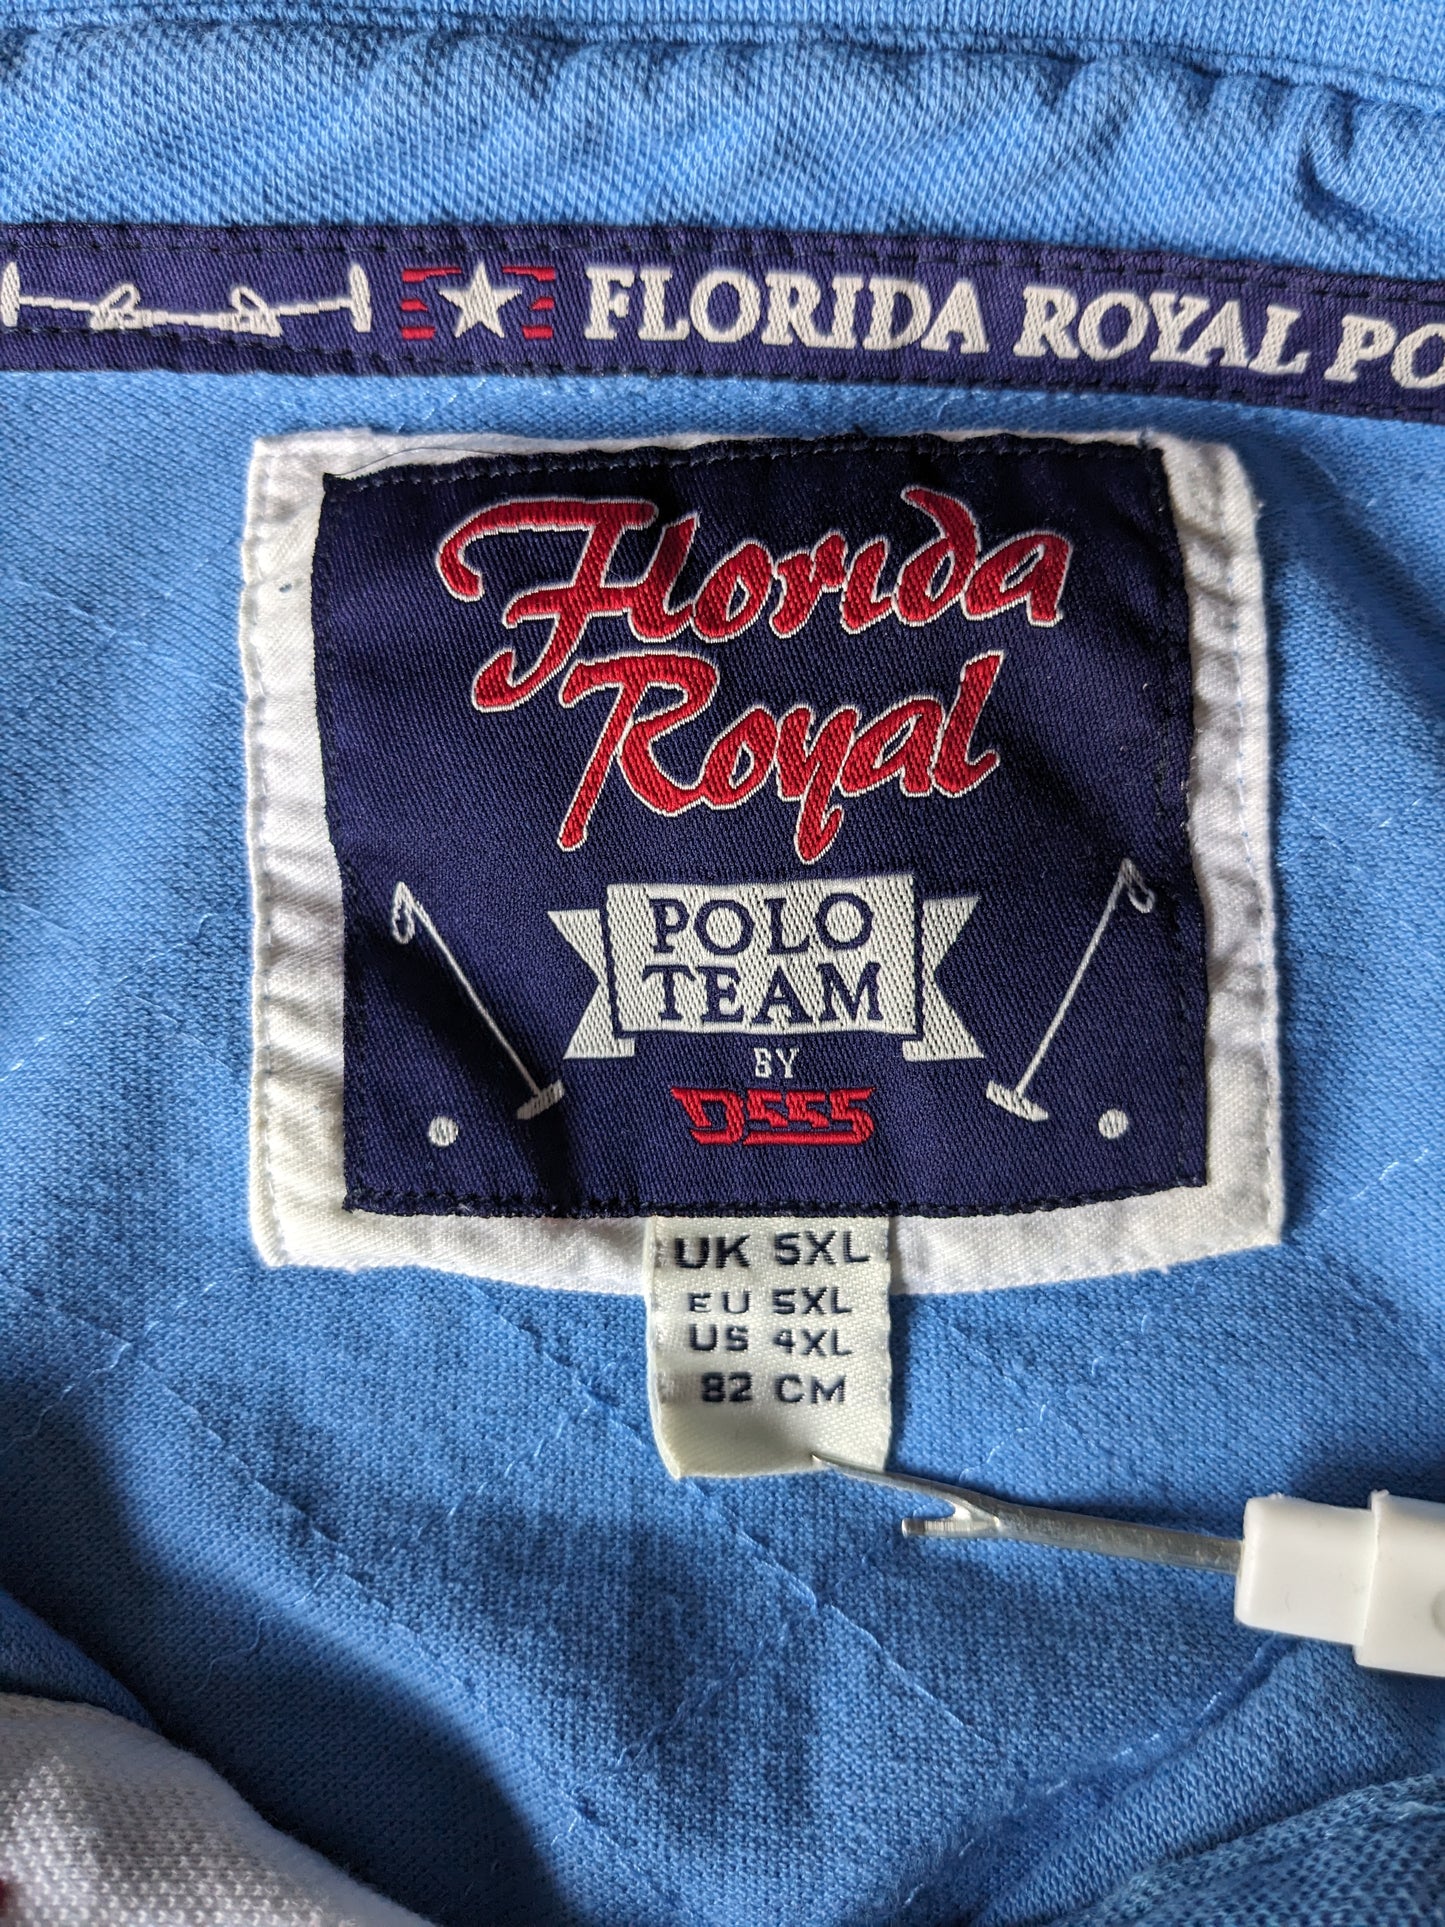 Florida Royal polo. Blauw met geborduurde applicaties. Maat 5XL / XXXXXL.